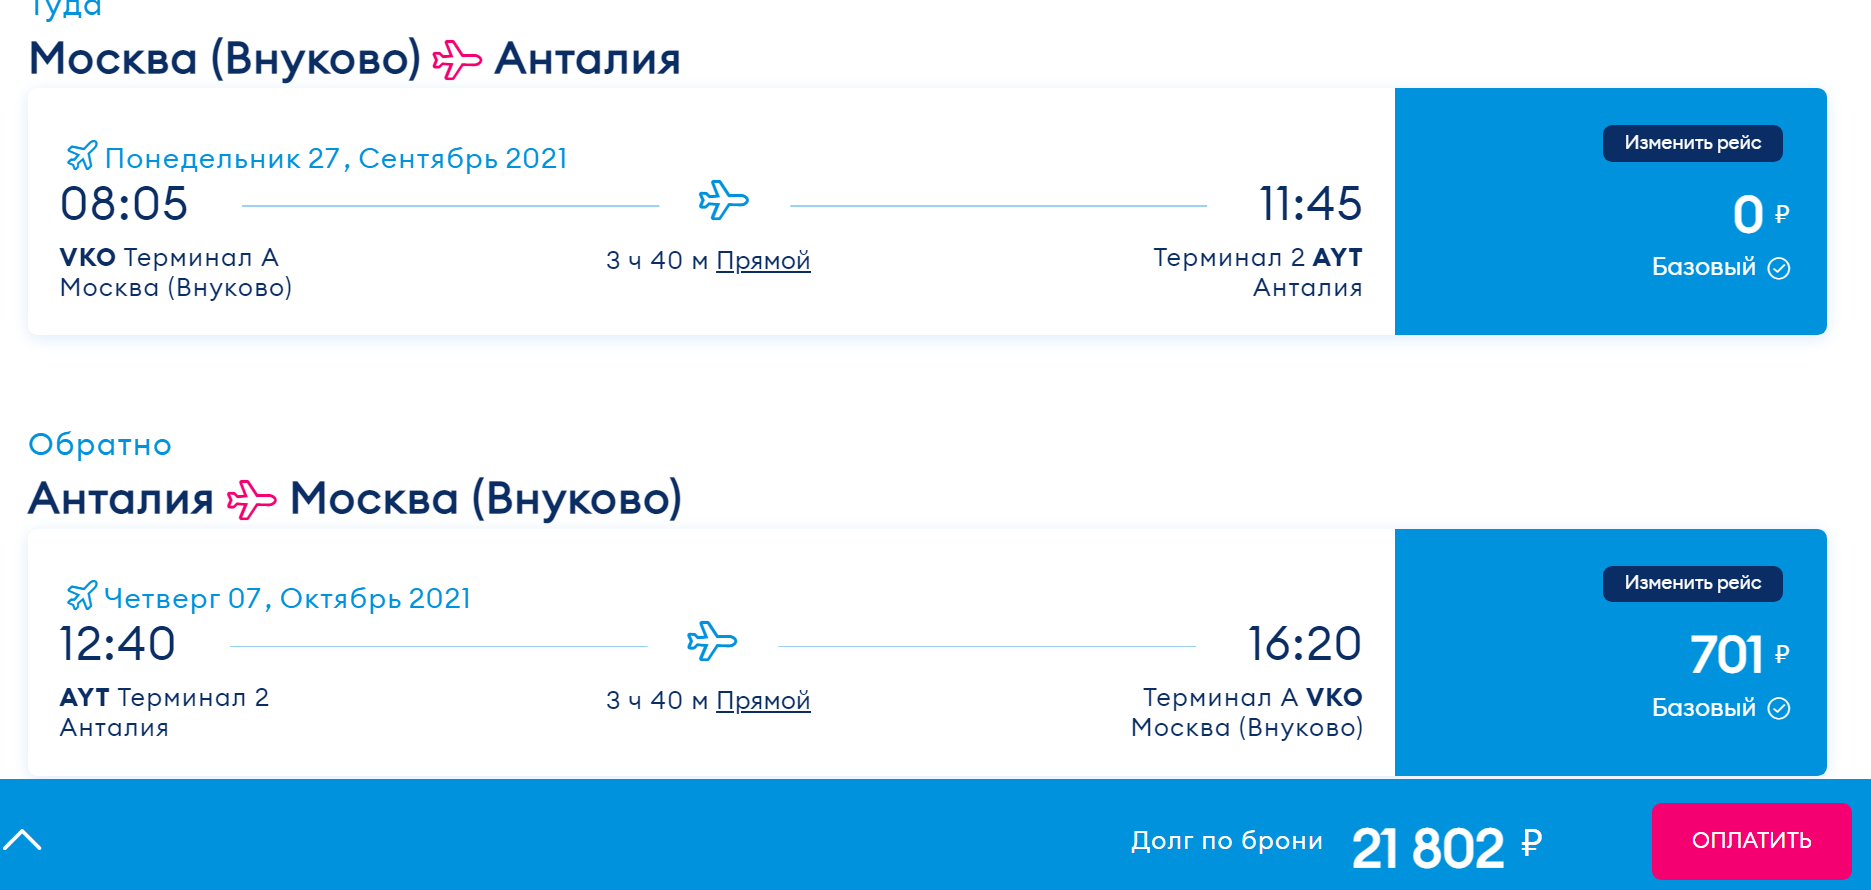 Москва крымск авиабилеты победа цена субсидированных авиабилетов